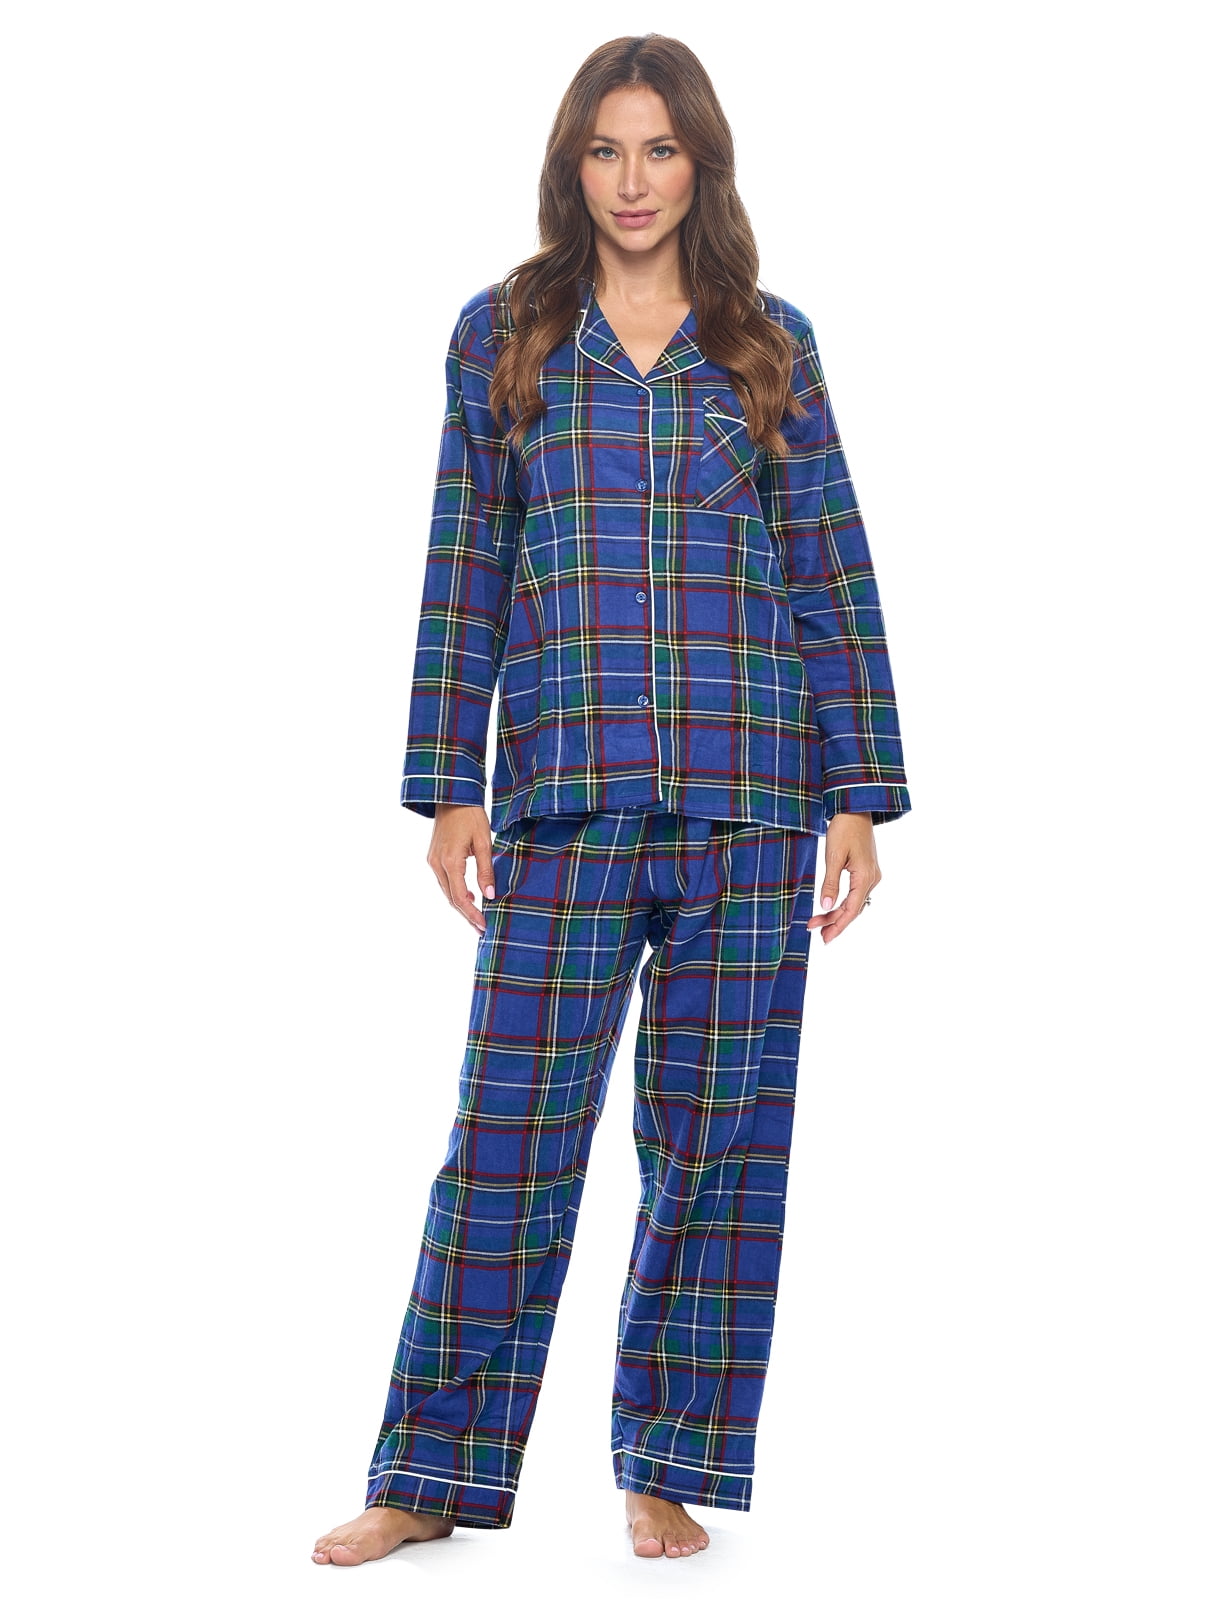 Casual Nights Women's Flannel Long Sleeve PJ's Button Down Sleepwear ...